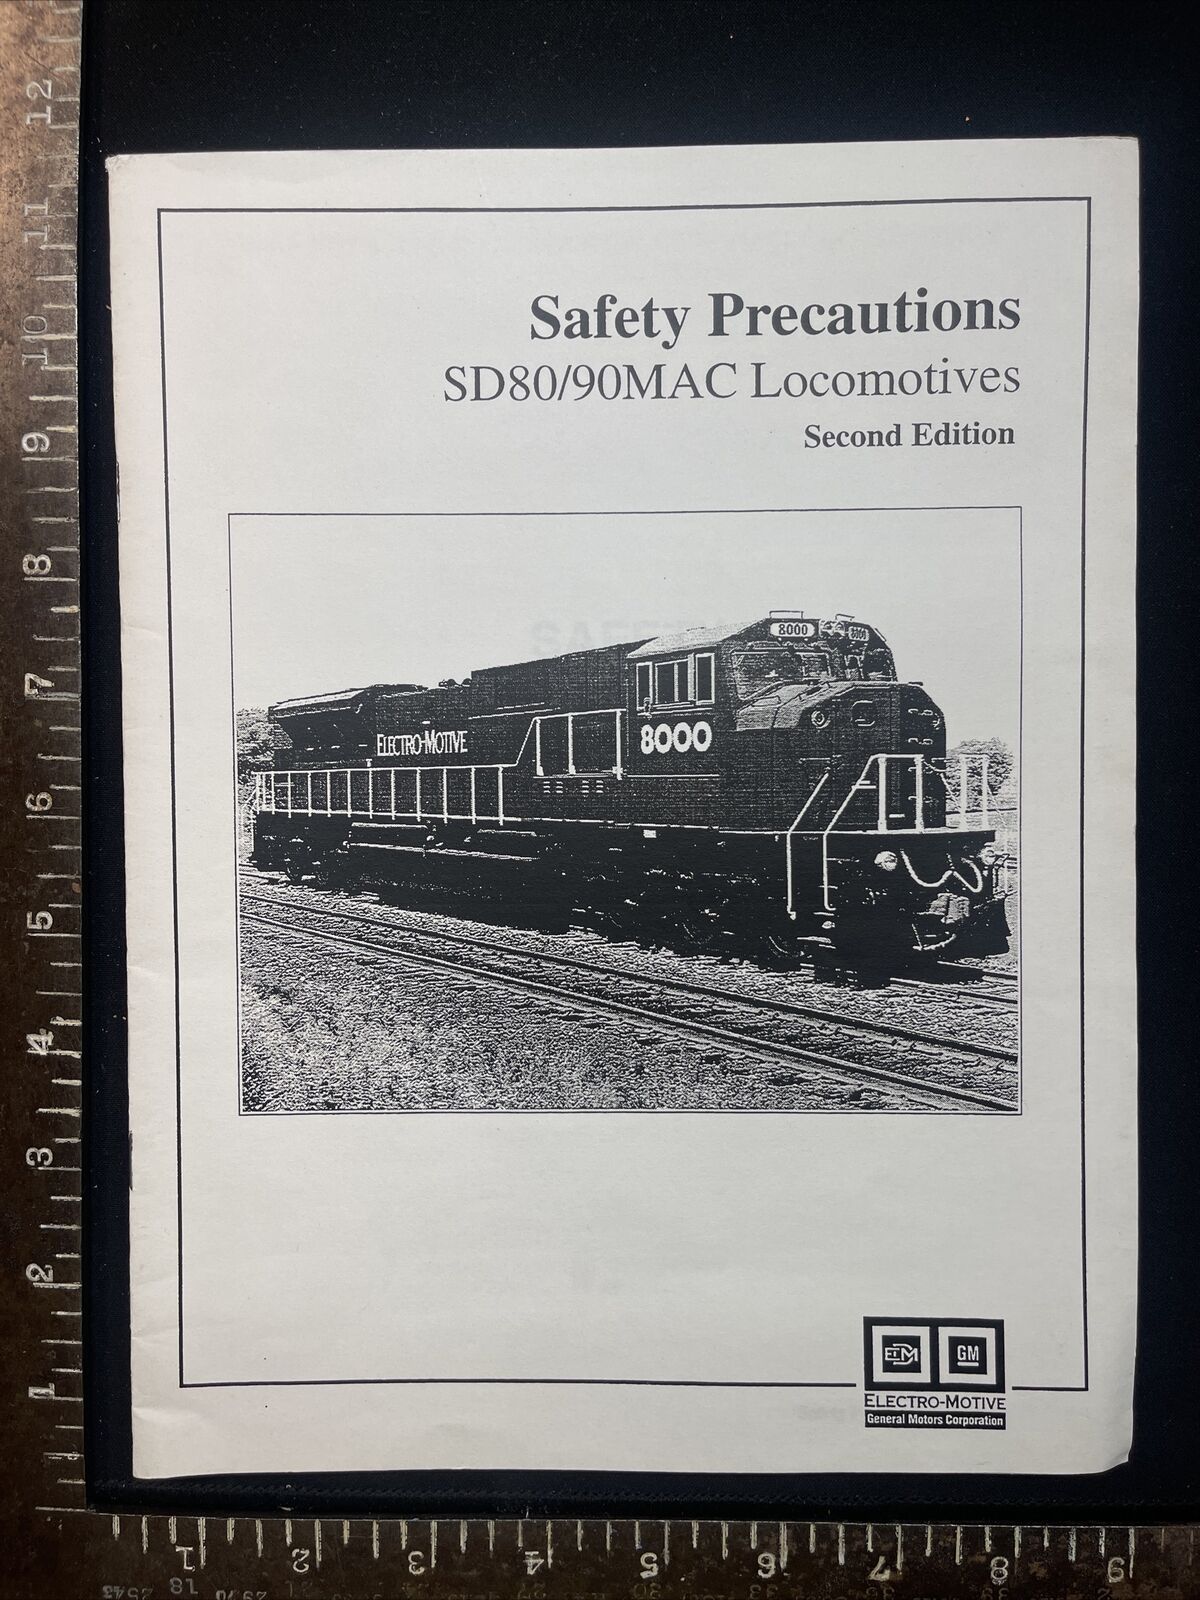 1996 GM EMD SD80/90 MAC Locomotives Safety Precautions